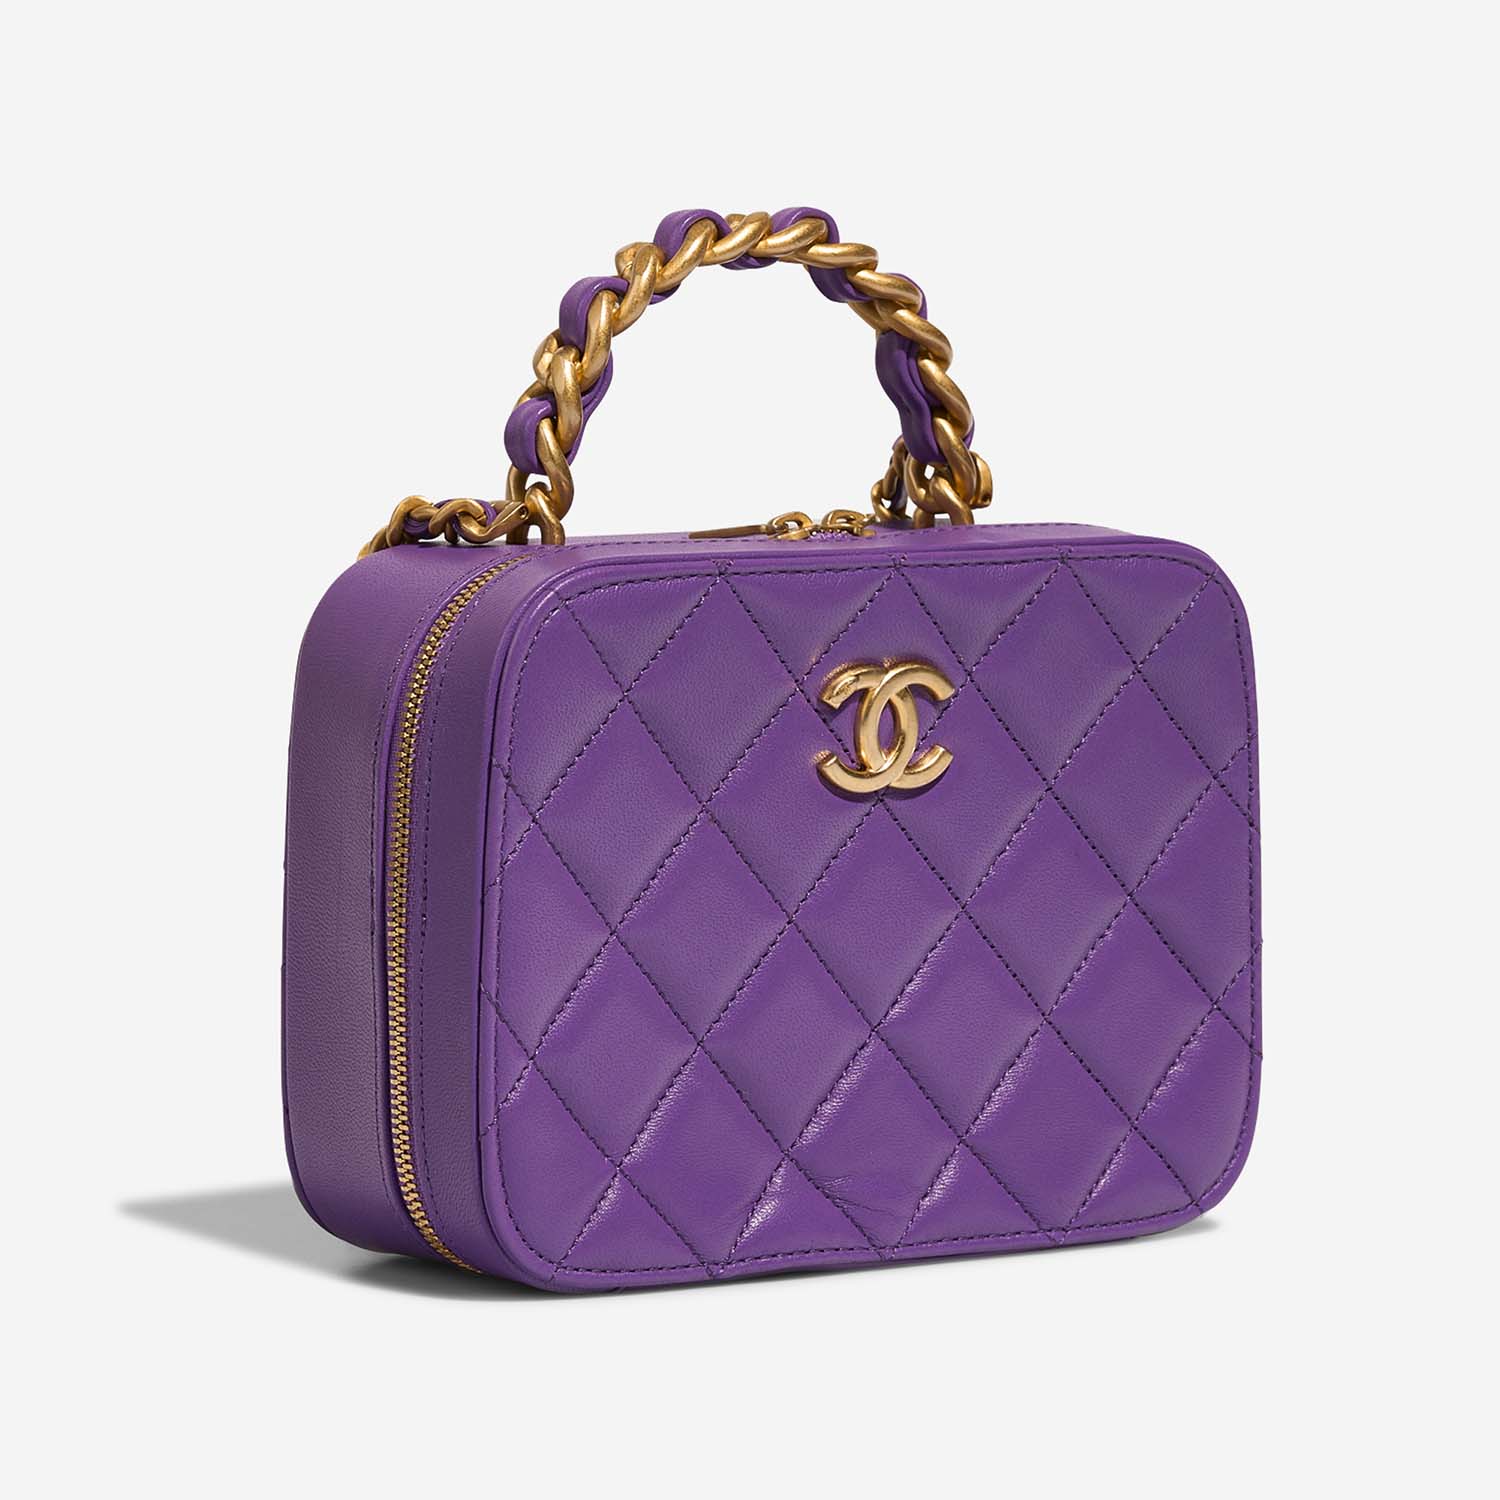 Chanel Vanity Small Violet Side Front | Verkaufen Sie Ihre Designer-Tasche auf Saclab.com